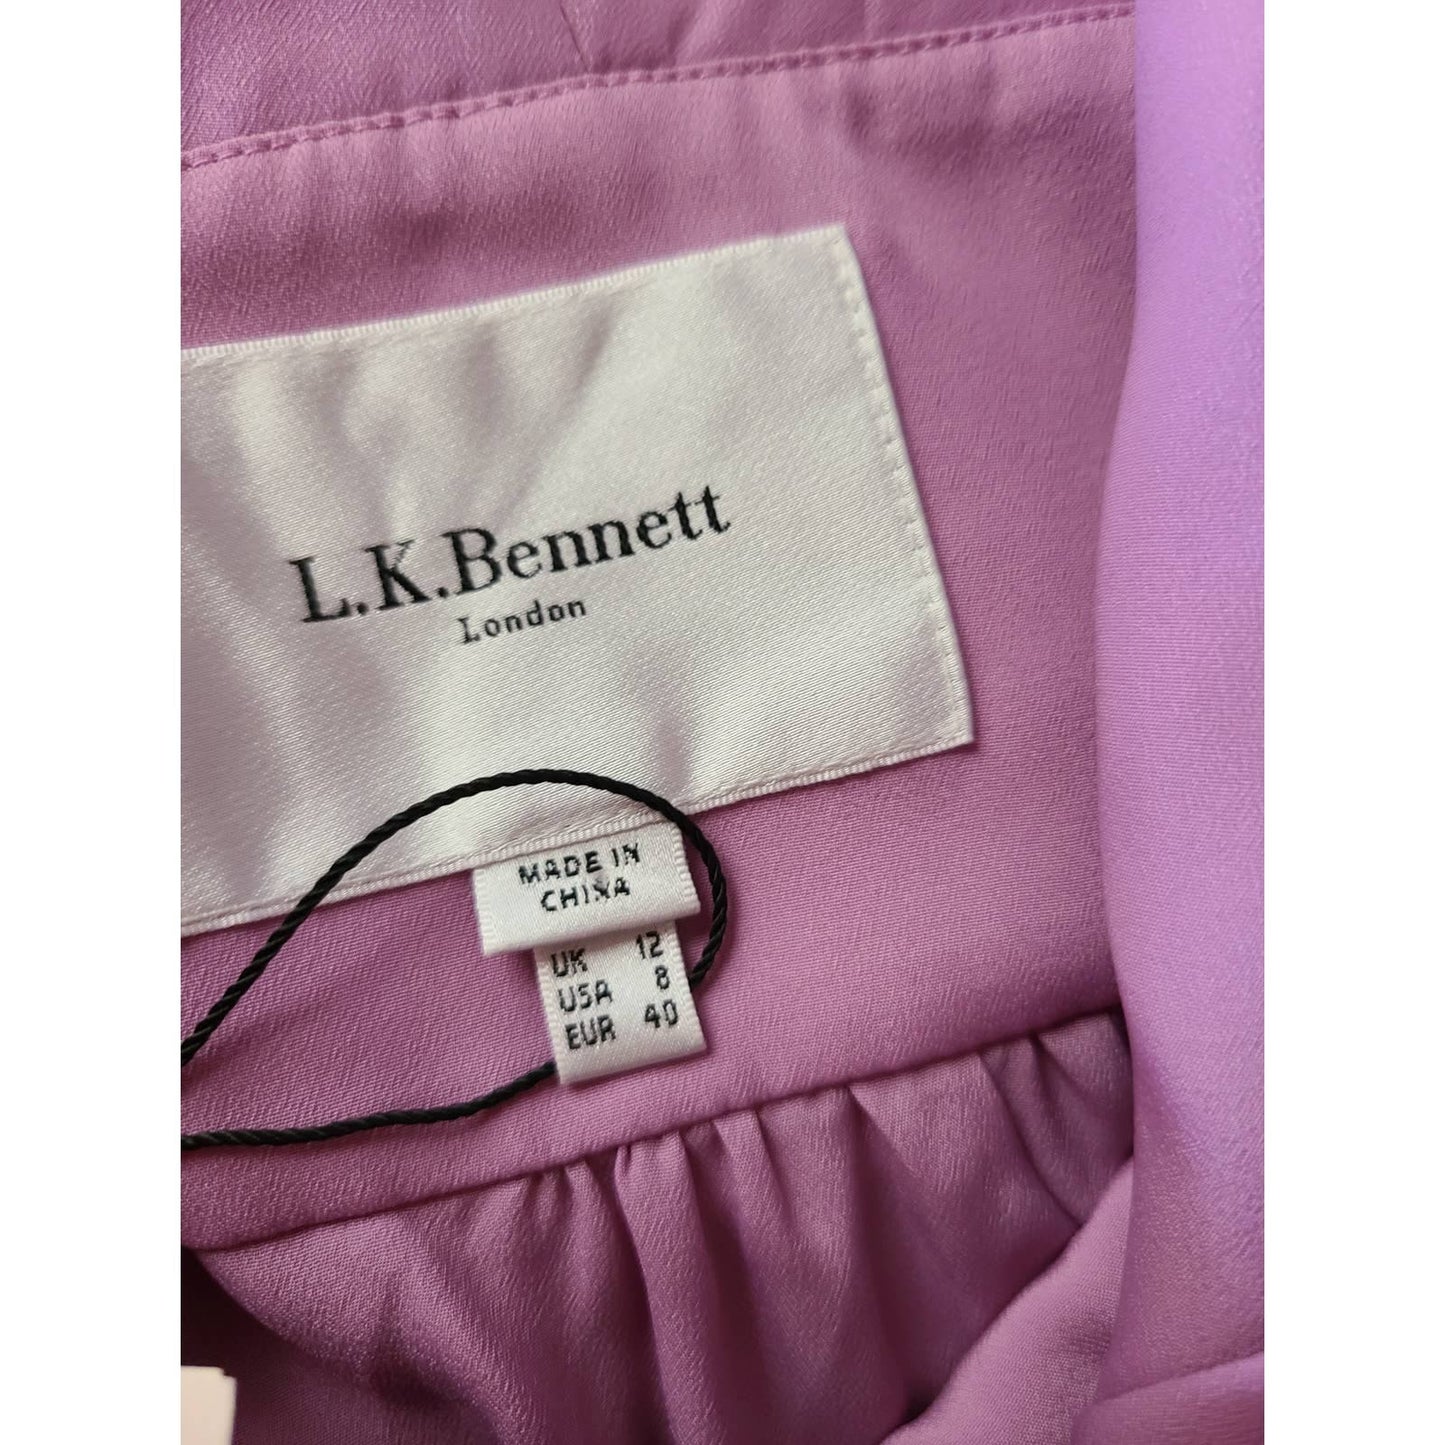 L.K. Bennett Lori Silk Dress Size 8